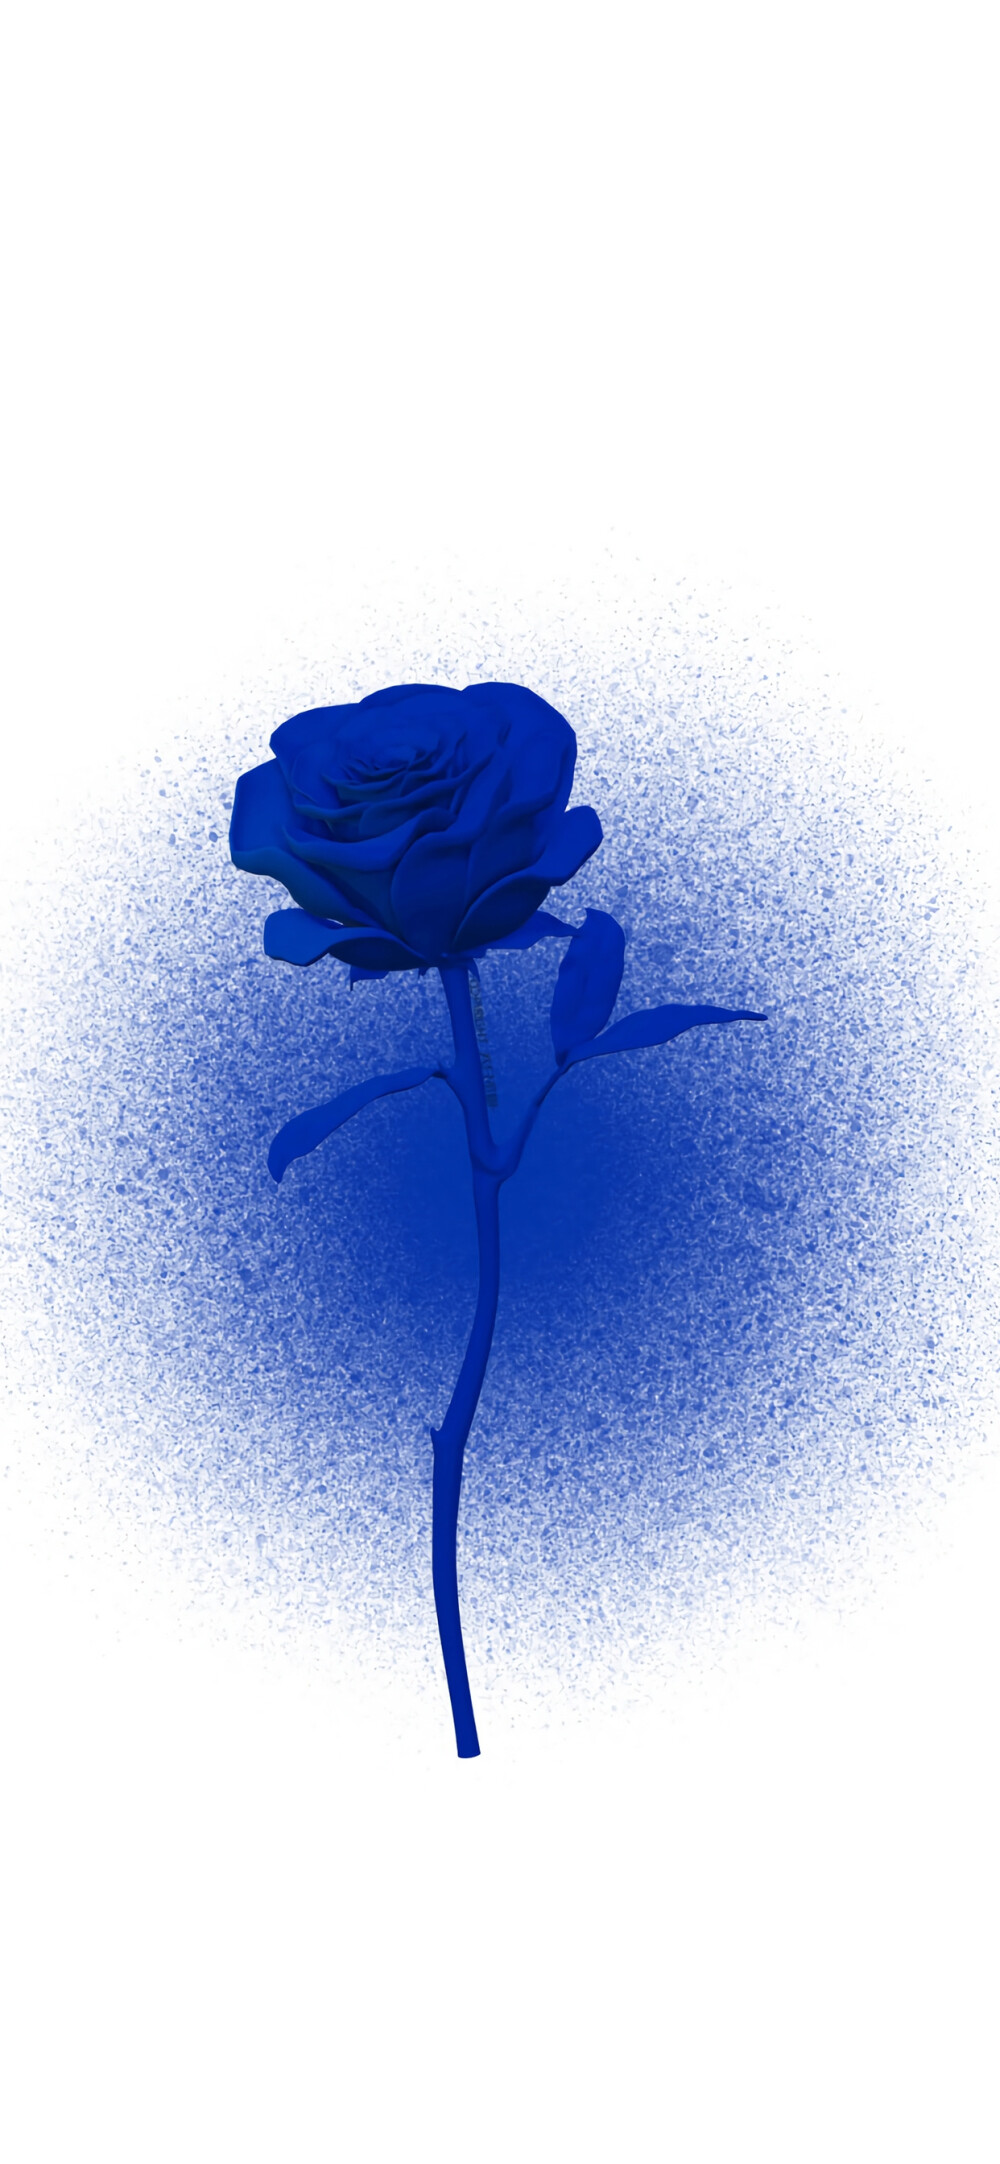 ins风克莱因蓝壁纸玫瑰图片